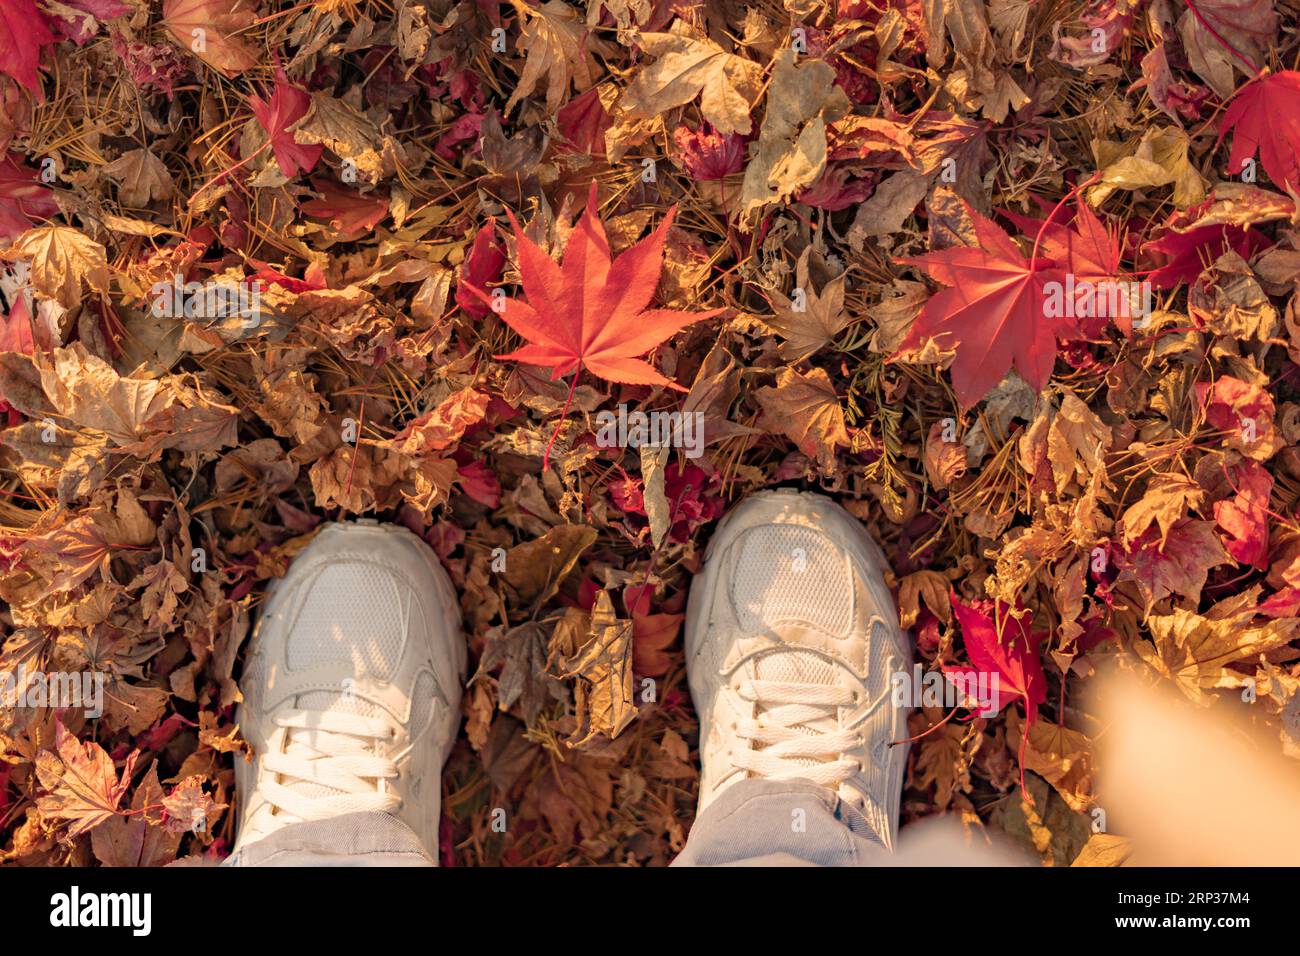 Die Füße einer Person in weißen Turnschuhen stehen auf herabfallenden Herbstblättern und zeigen ein herabfallendes rotes Ahornblatt Stockfoto